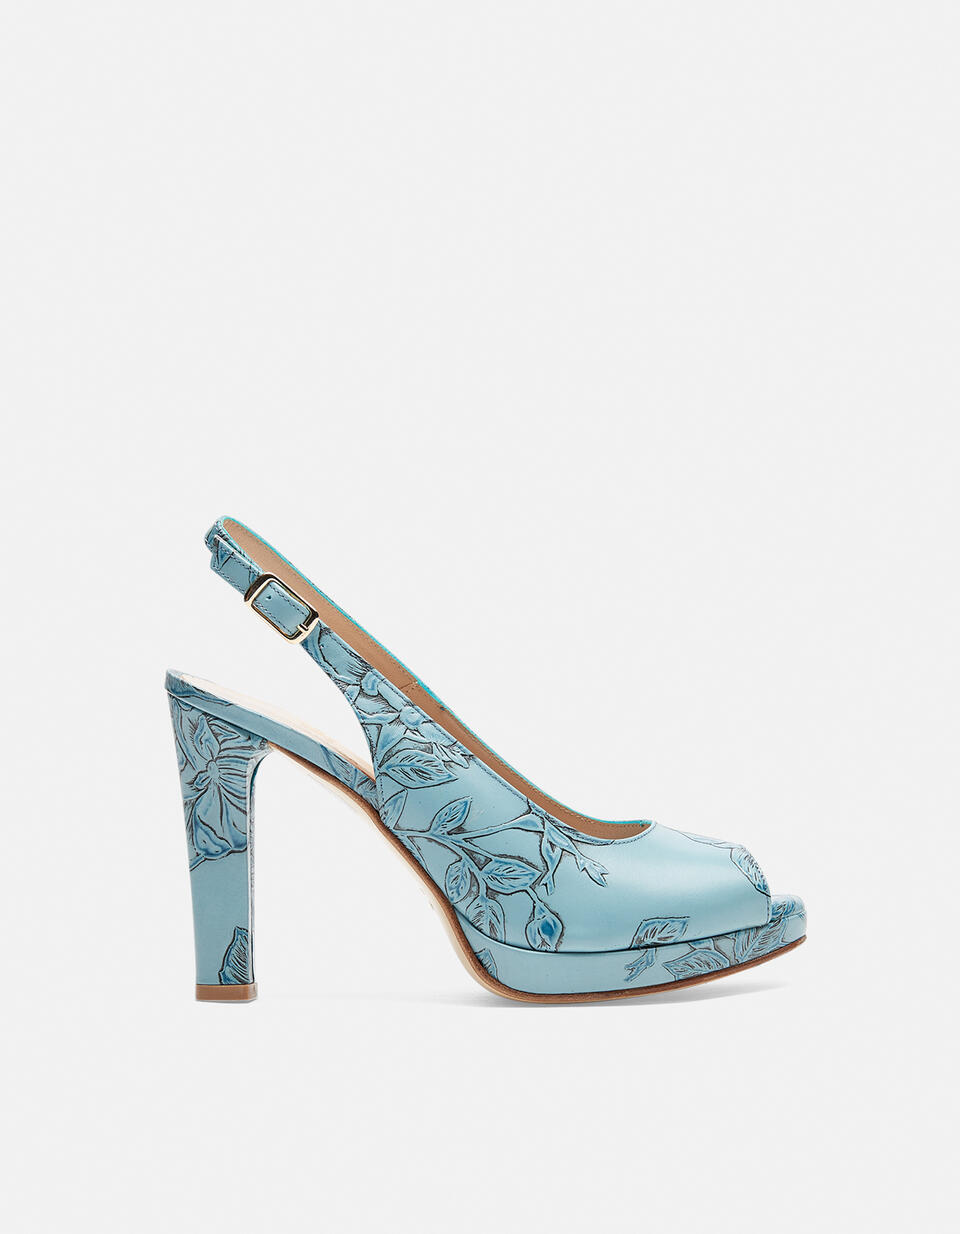 MONROE SANDAL Light blue  - Woman Shoes - Shoes - Cuoieria Fiorentina